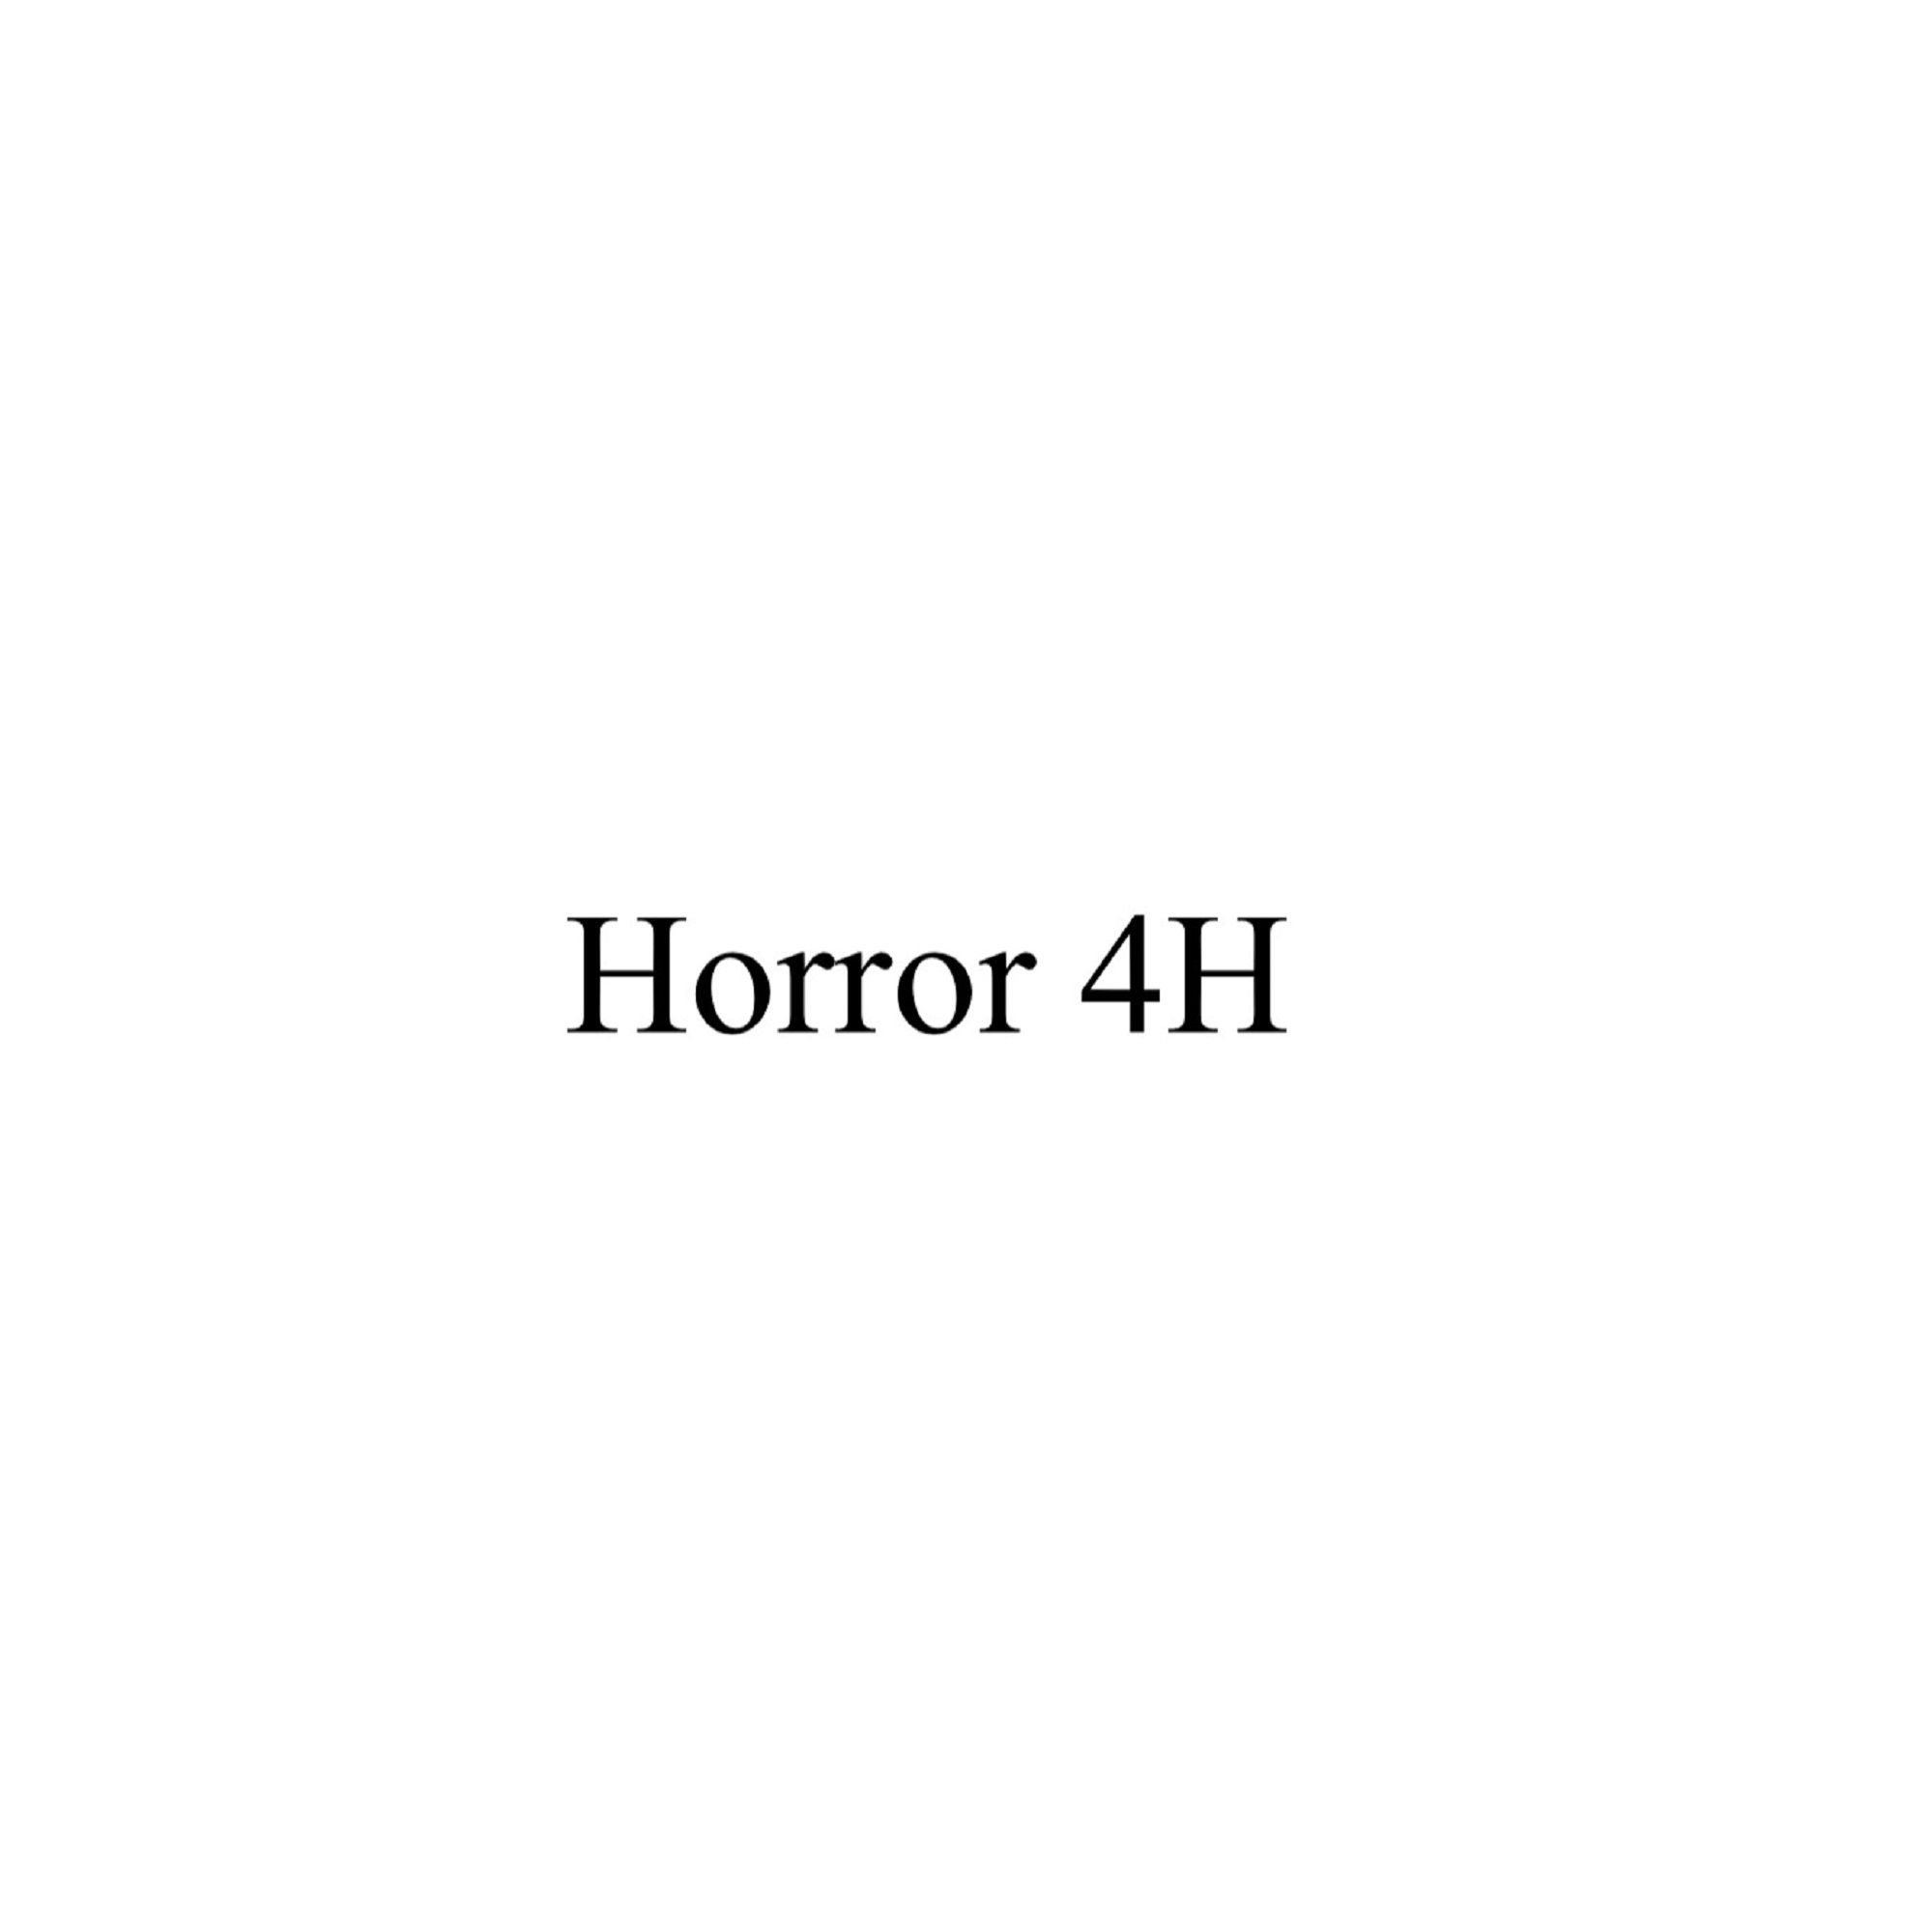 Horror 4H